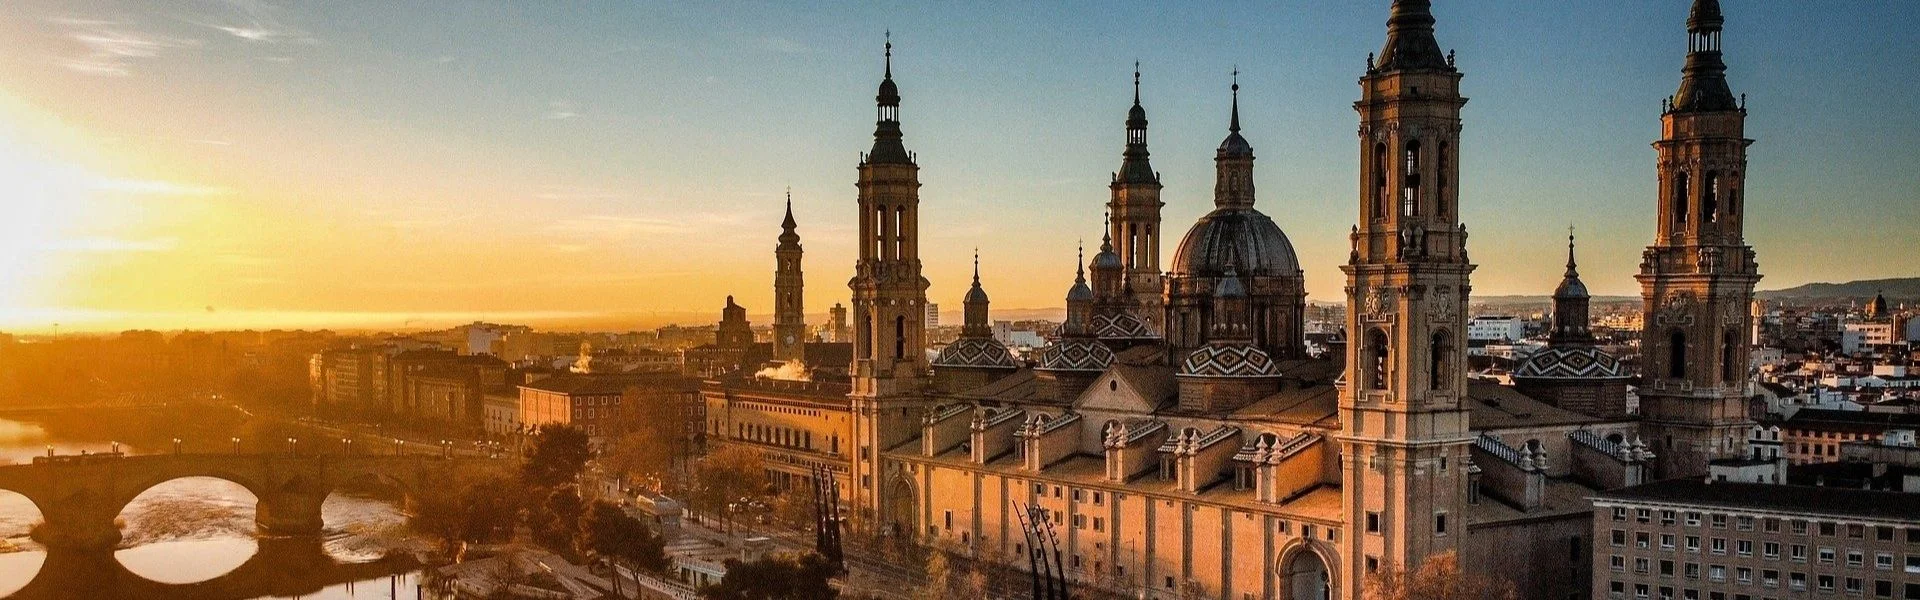 Basílica del Pilar - empadronamiento online en Zaragoza - CertificadoElectronico.es